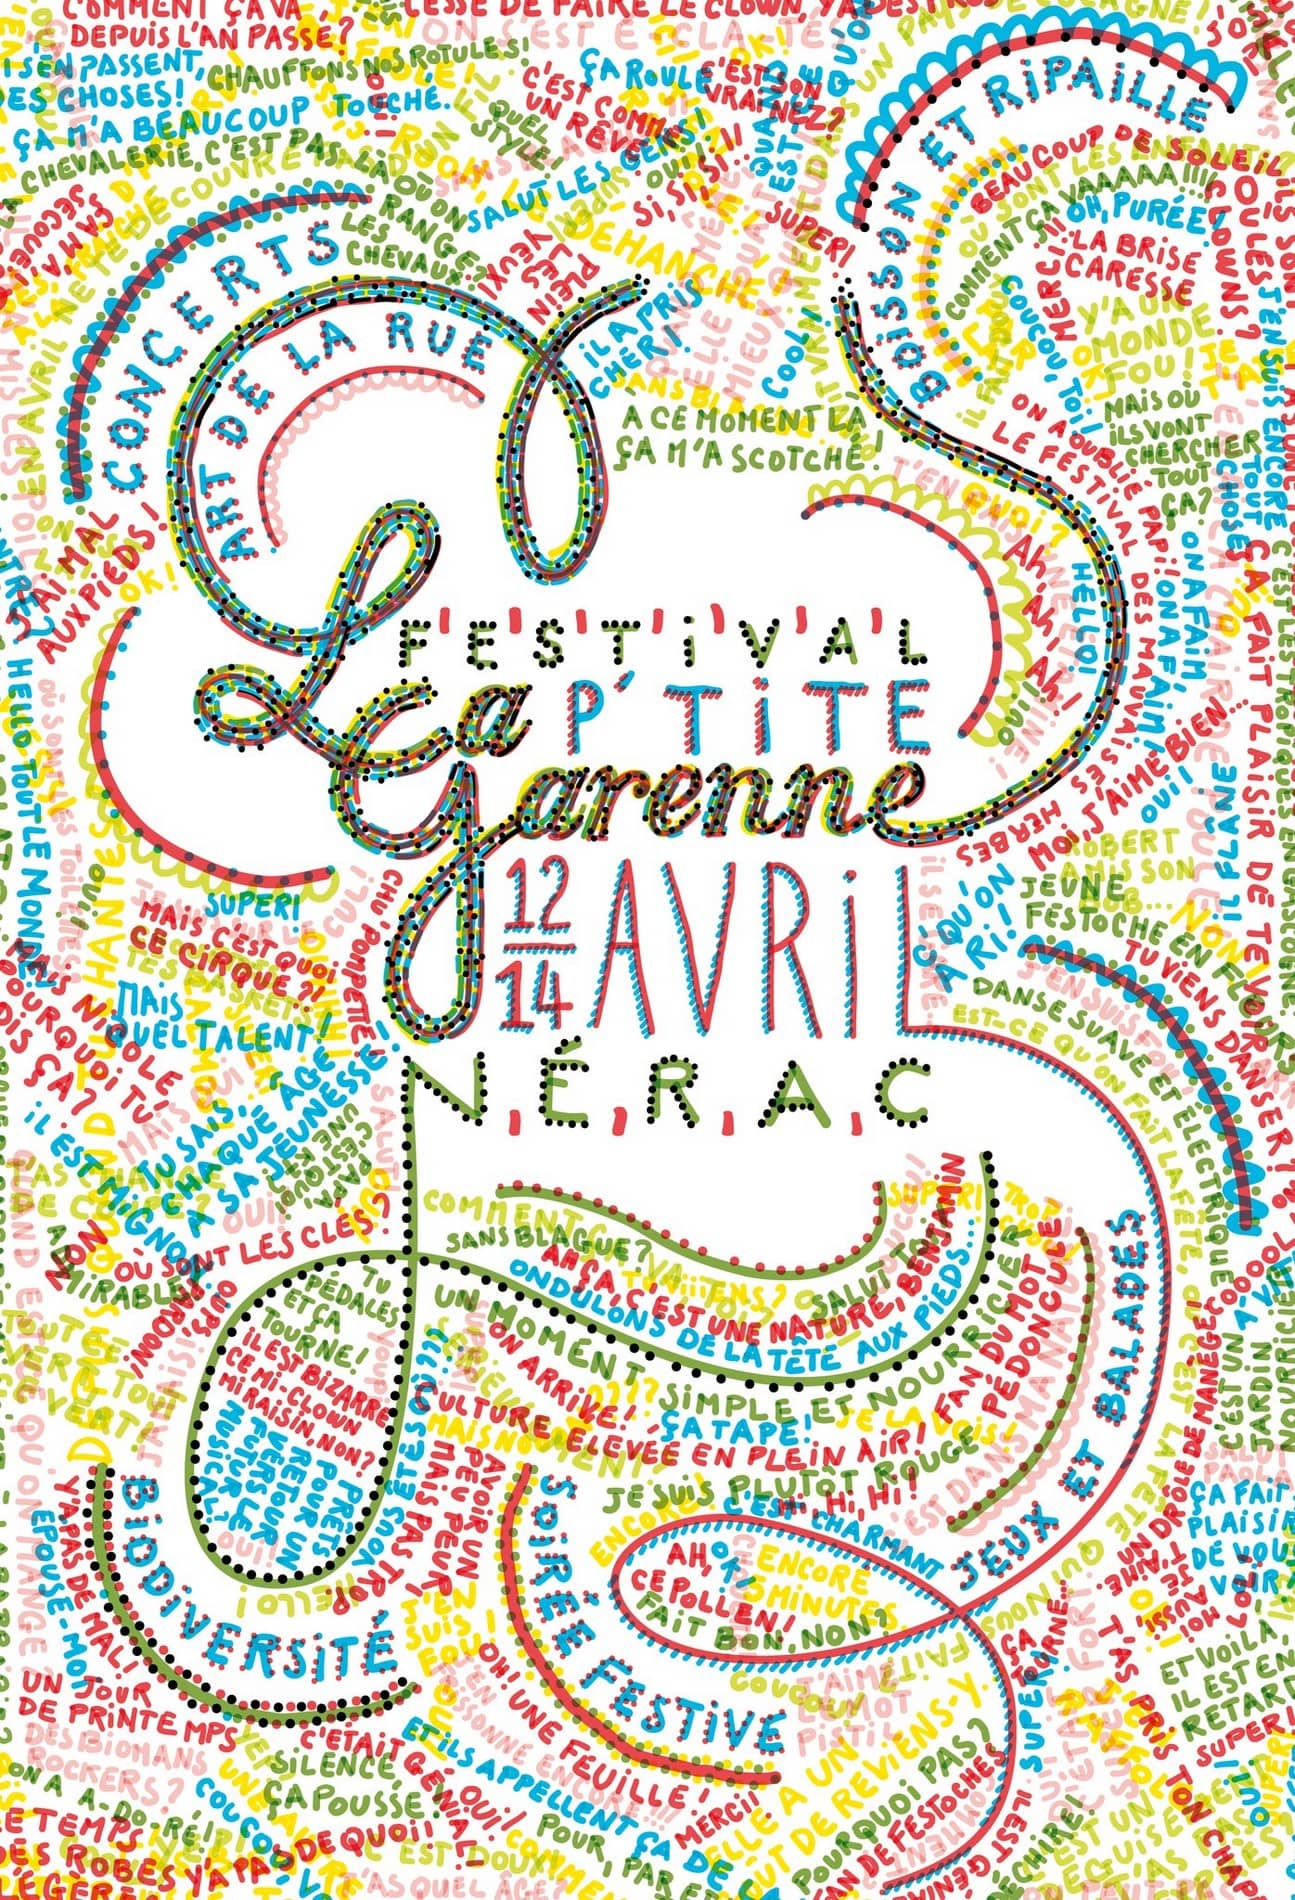 Festival La P'tite Garenne